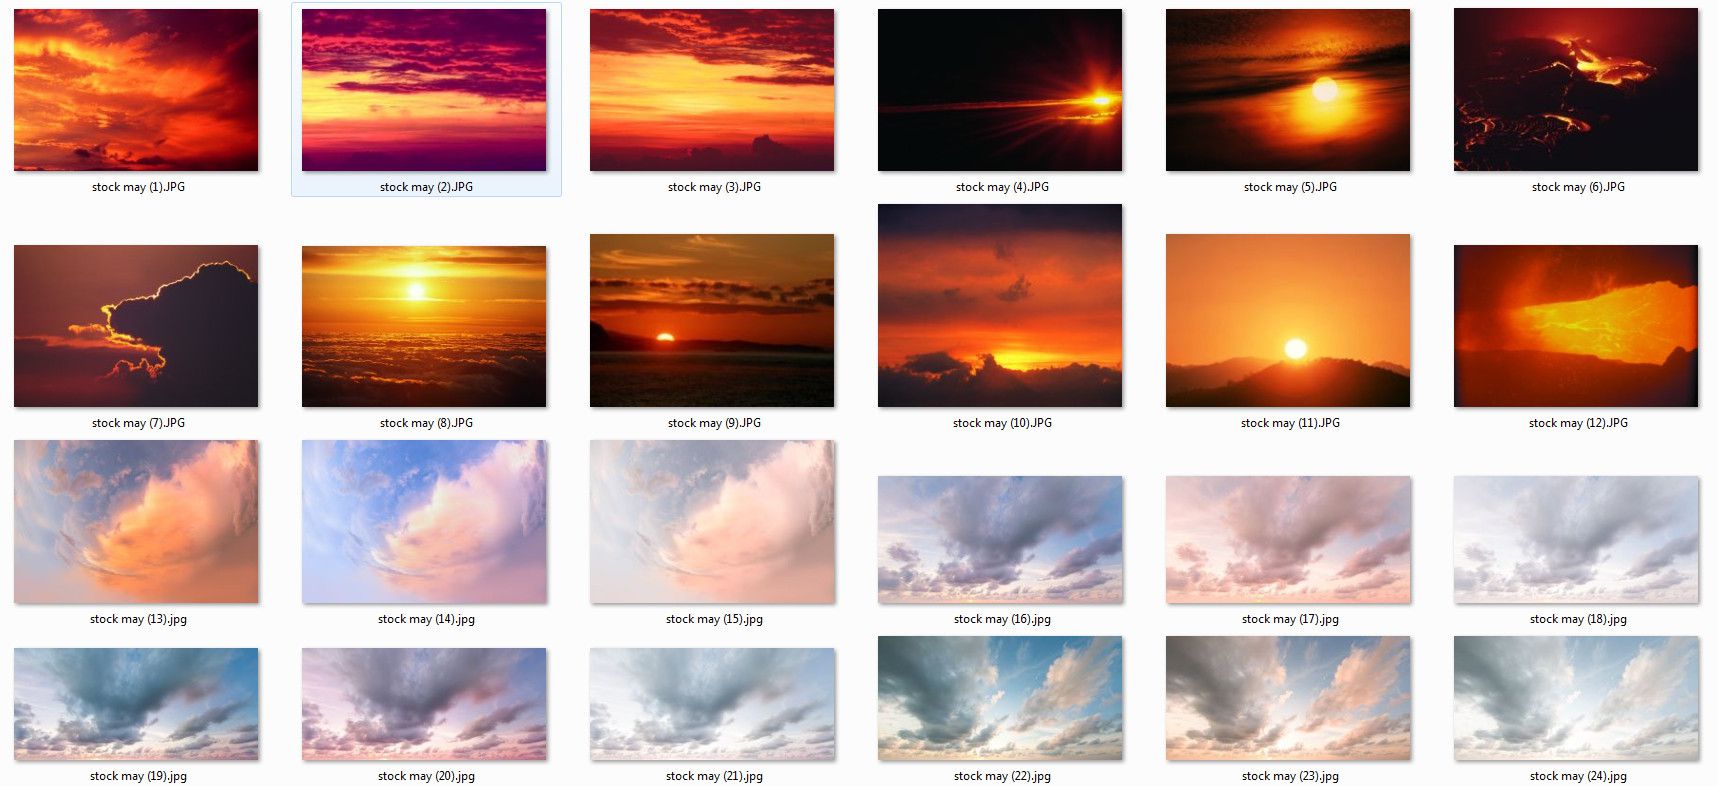 Tất cả chúng ta đều muốn sở hữu những hình ảnh đẹp mắt và ấn tượng nhất. Và PSD stock mây đẹp là một trong những tài nguyên tuyệt vời để giúp bạn đạt được điều đó. Chúng tôi có sẵn một số lượng lớn các PSD stock mây đa dạng để giúp bạn tạo ra những hình ảnh ấn tượng và đẹp nhất.